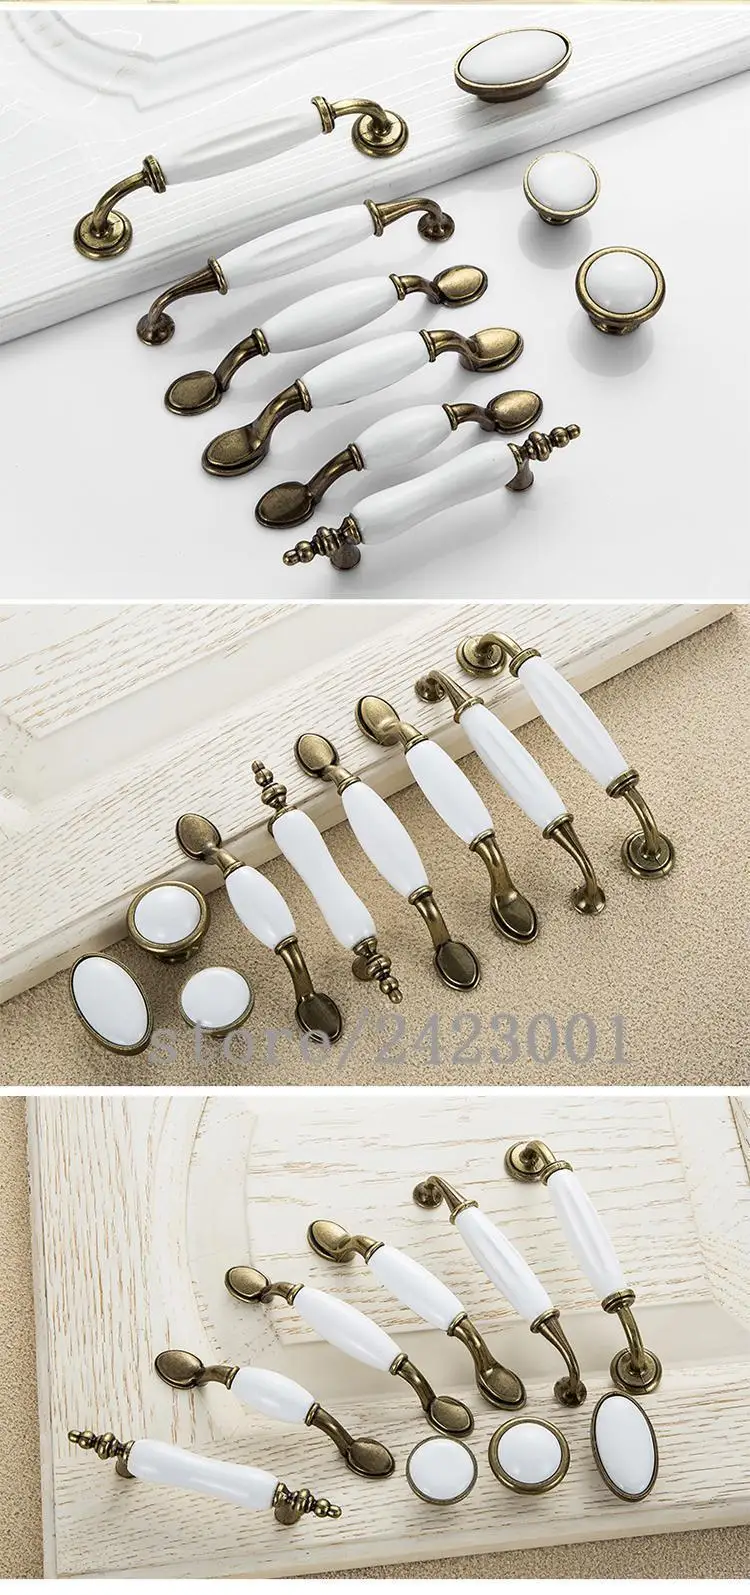 Европейская антикварная мебель белые керамические дверные ручки для ящиков Кухня шкафа одно отверстие ручки расстояние между отверстиями 76/96/128 мм